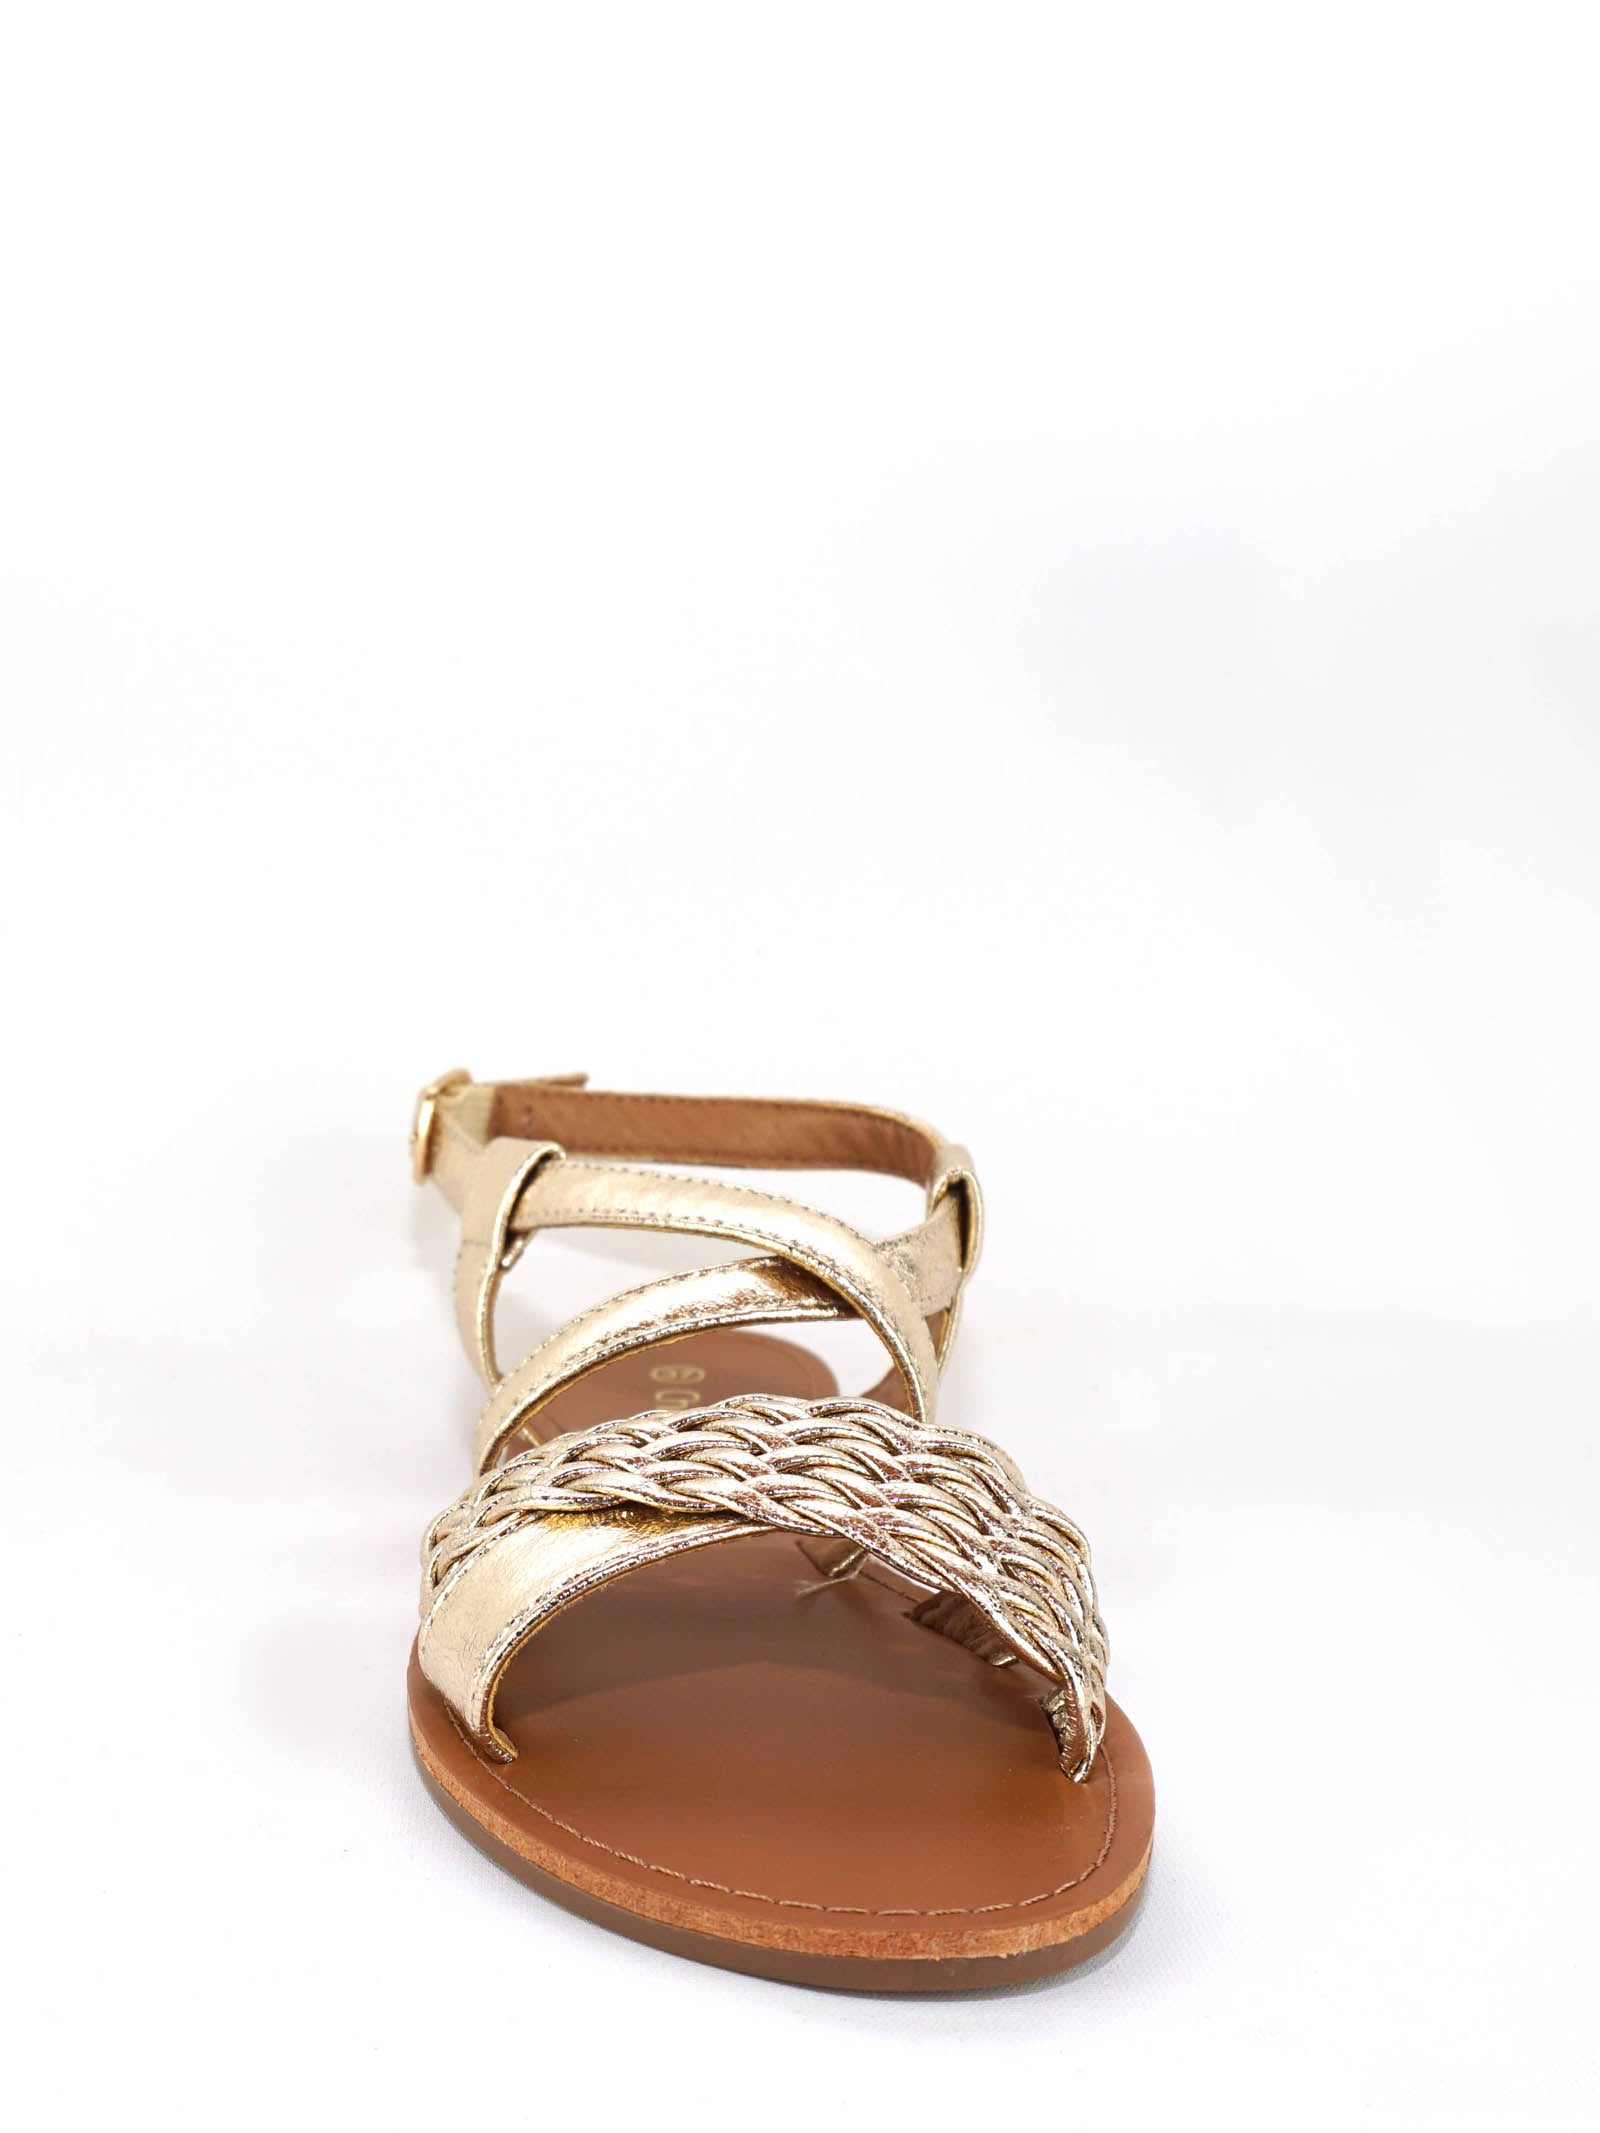 Sandales dorées Agathoises